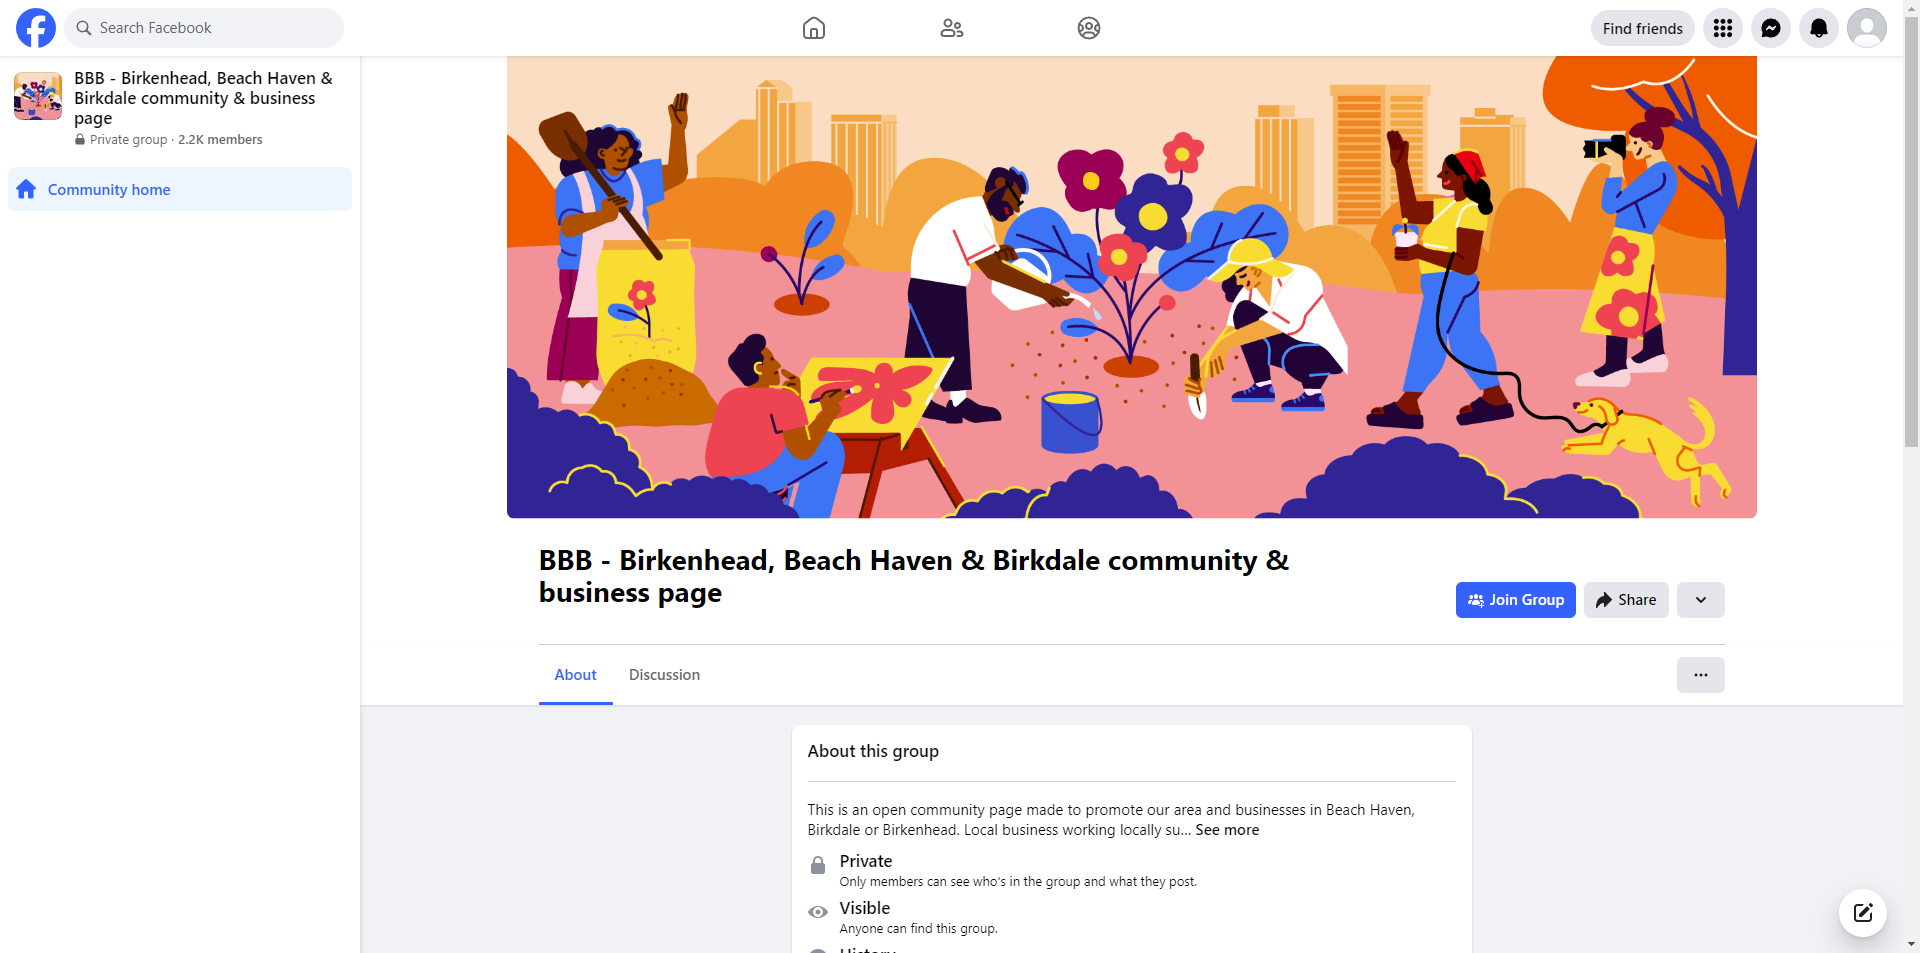 BBB - Birkenhead, Beach Haven & Birkdale Community & Business Page